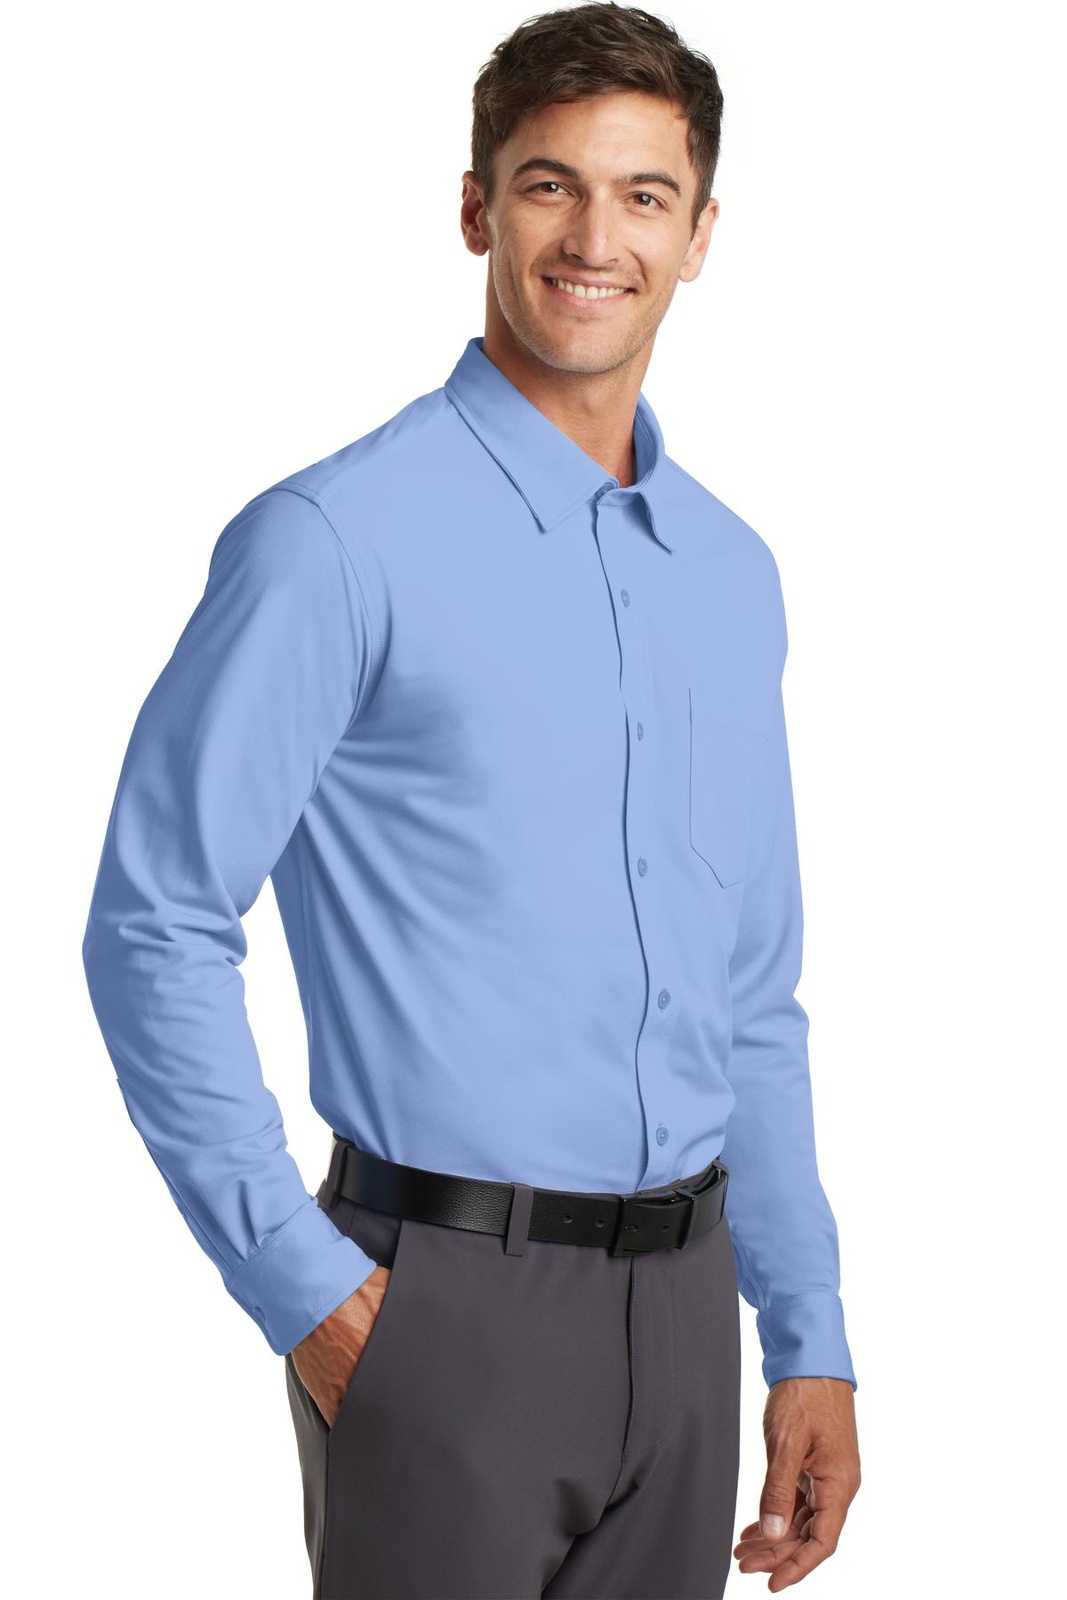 Port Authority K570 Dimension Knit Dress Shirt - Dress Shirt Blue - HIT a Double - 4